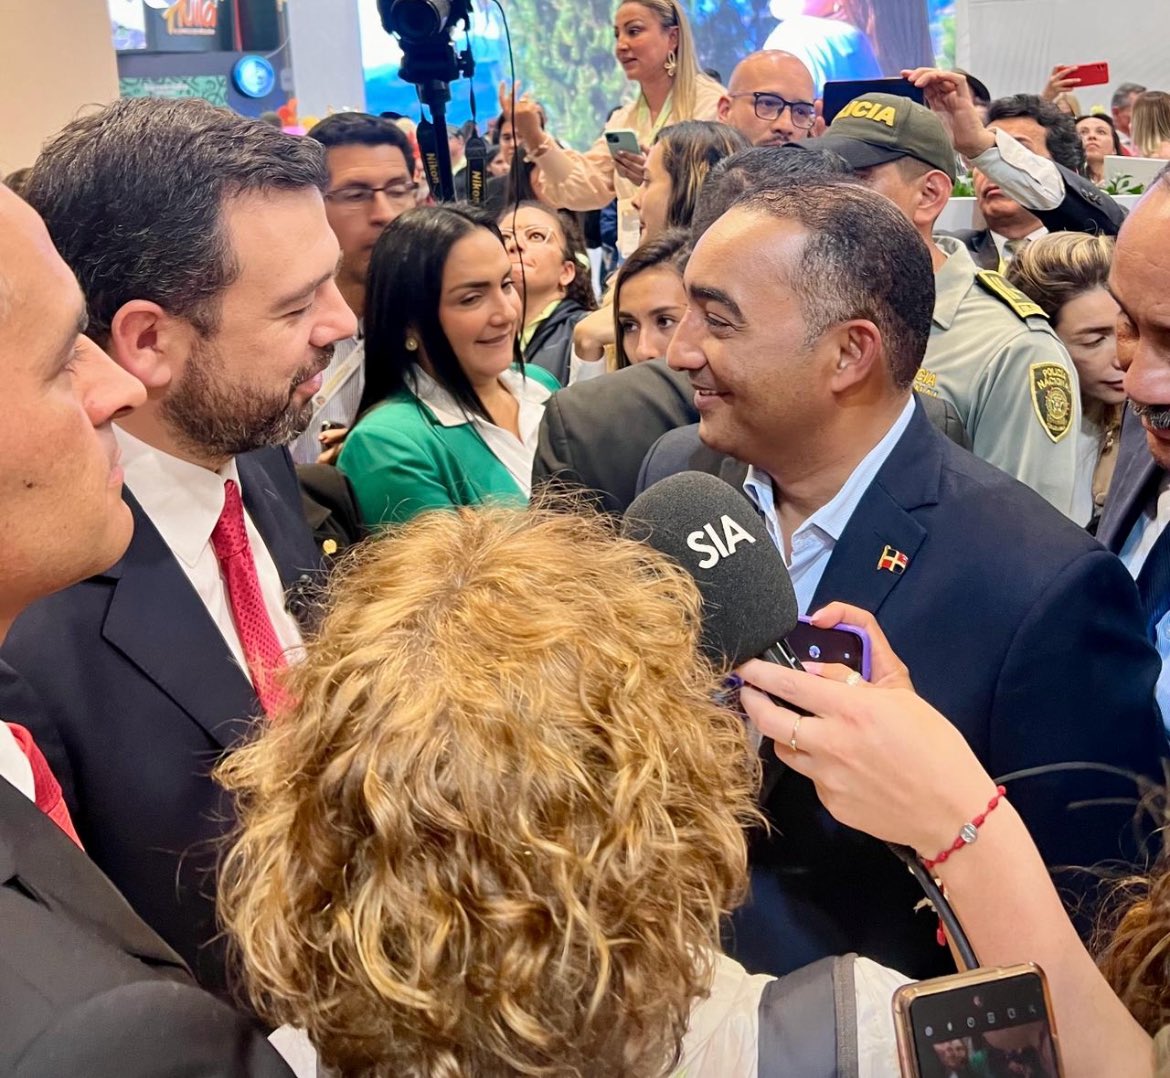 Un encuentro enriquecedor entre @RamirezManolito, alcalde de Punta Cana y el alcalde mayor de Bogotá @CarlosFGalan, durante el desarrollo de la Vitrina Turística Anato, que se celebra en esa ciudad de Bogotá, Colombia.